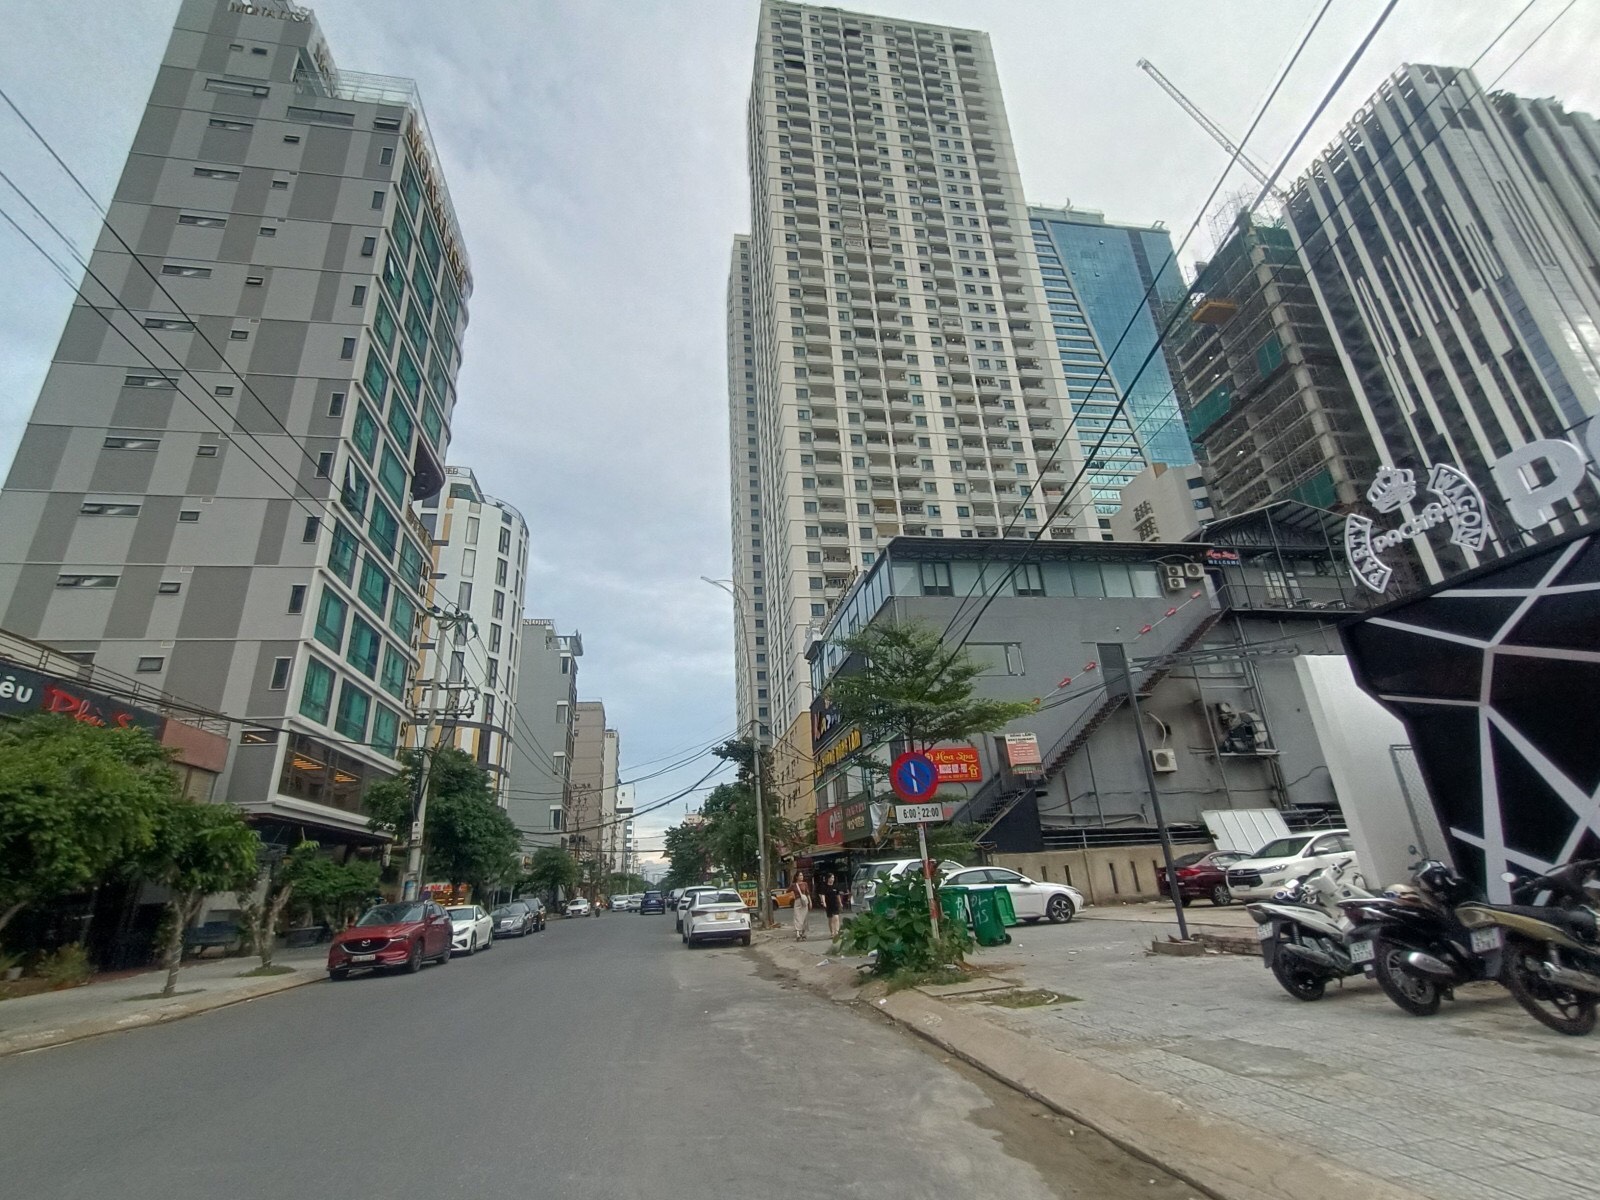 Bán toà căn hộ 7 tầng thang máy phố Tây đi bộ An Thượng Đà Nẵng-Chỉ 13.9 tỷ thương lượng-0901127005.